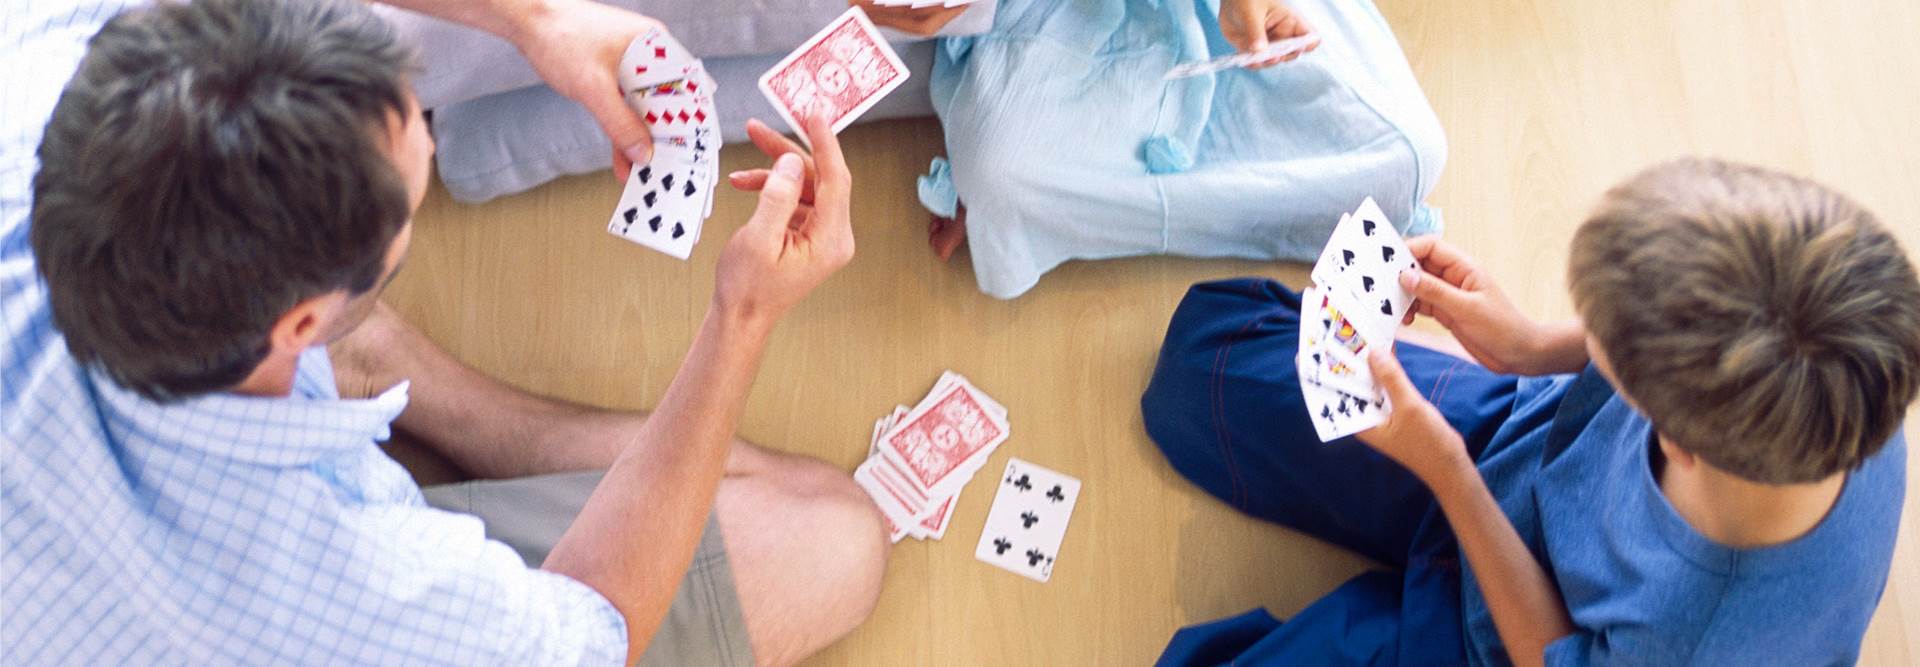 Mãe, pai e 2 filhos jogam as cartas no chão da sua casa.